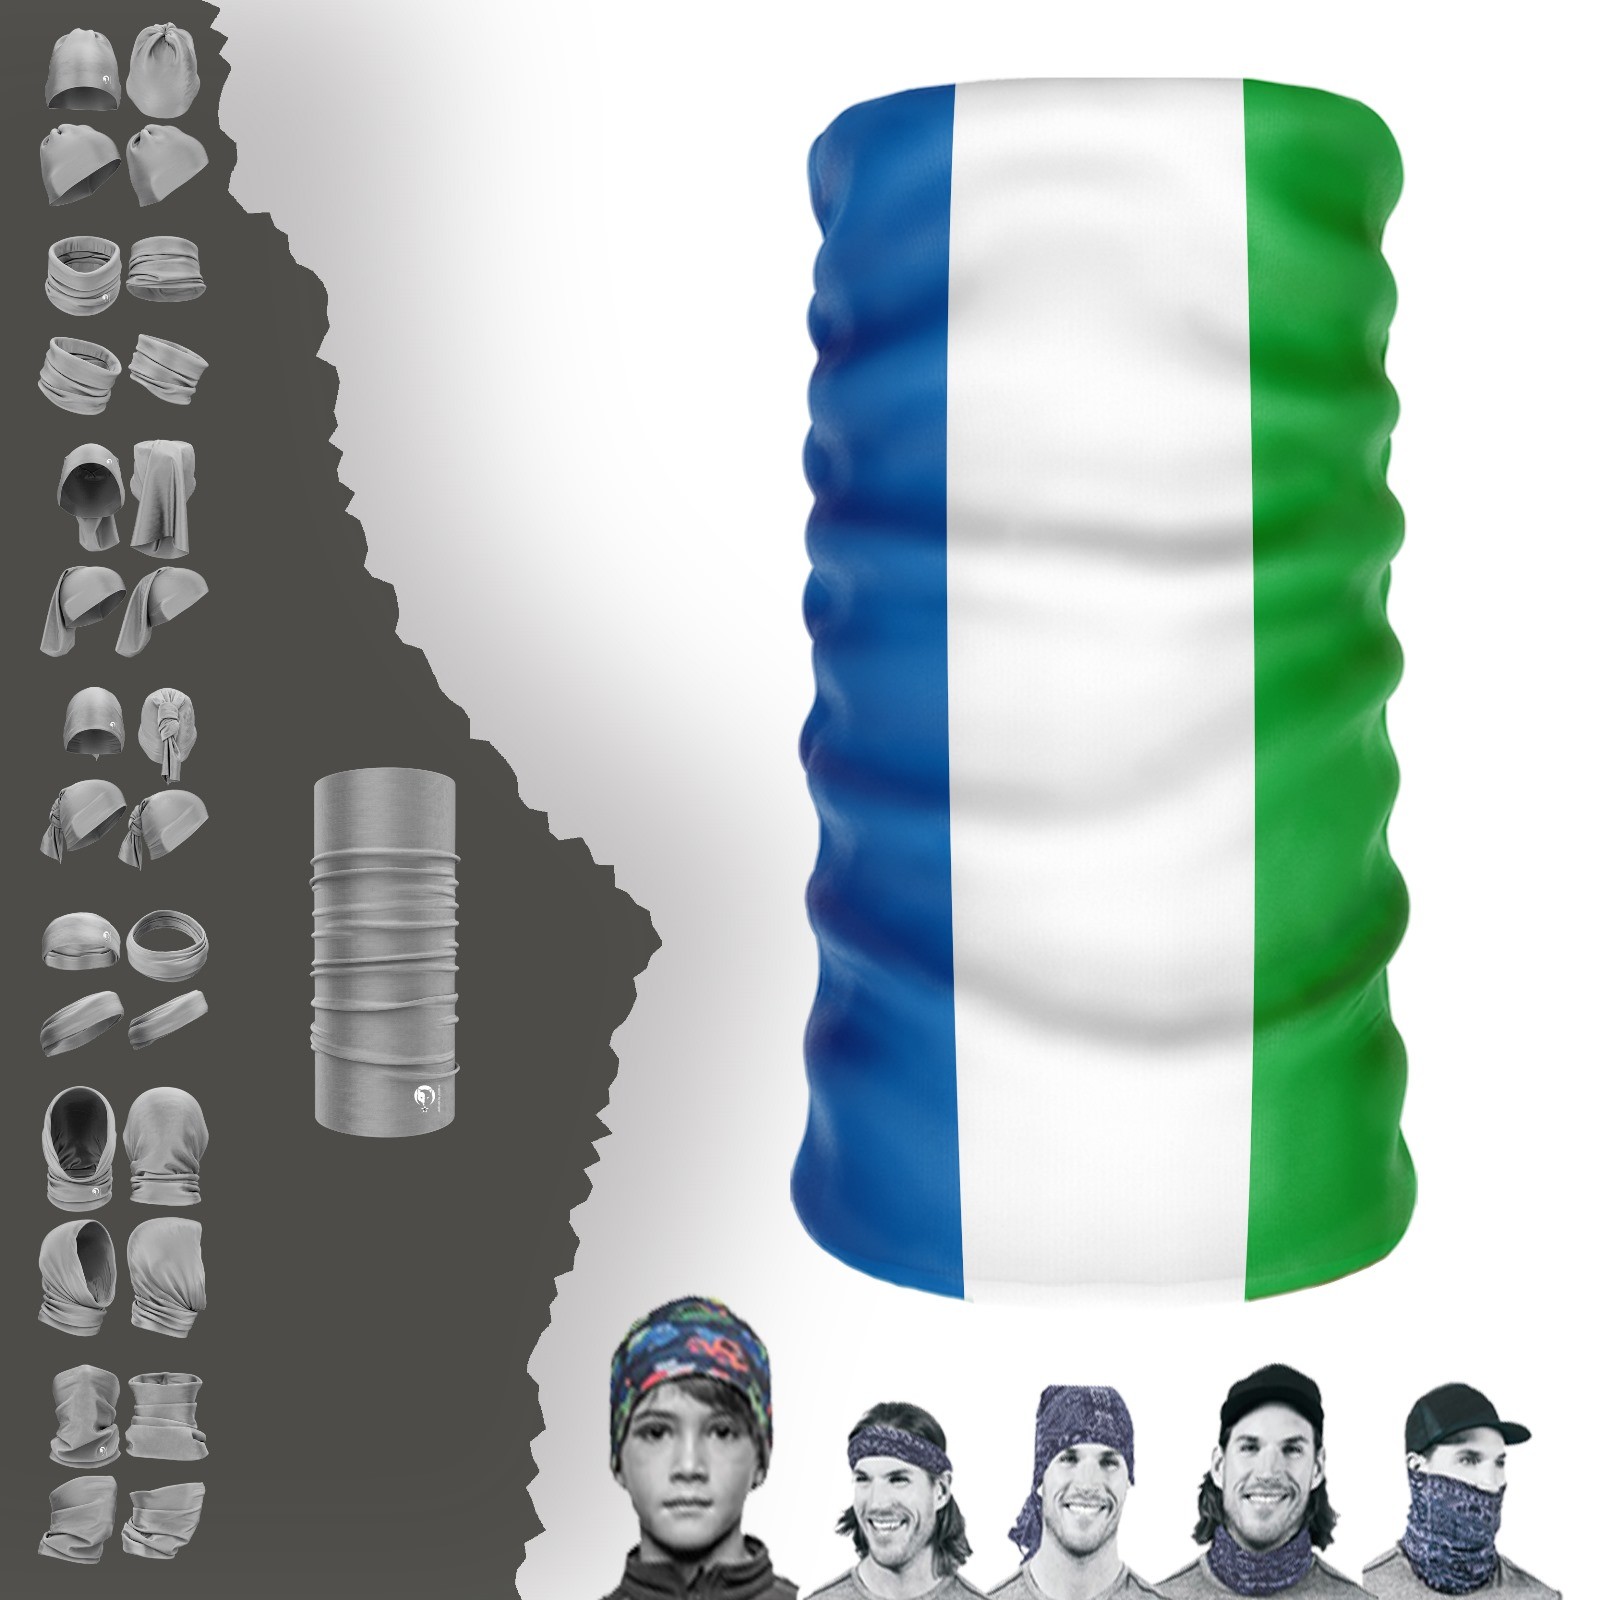 Шапка с воротником-флагом Сьерра-Леоне, бандана, маска, повязка на голову с пряжкой и капюшоном